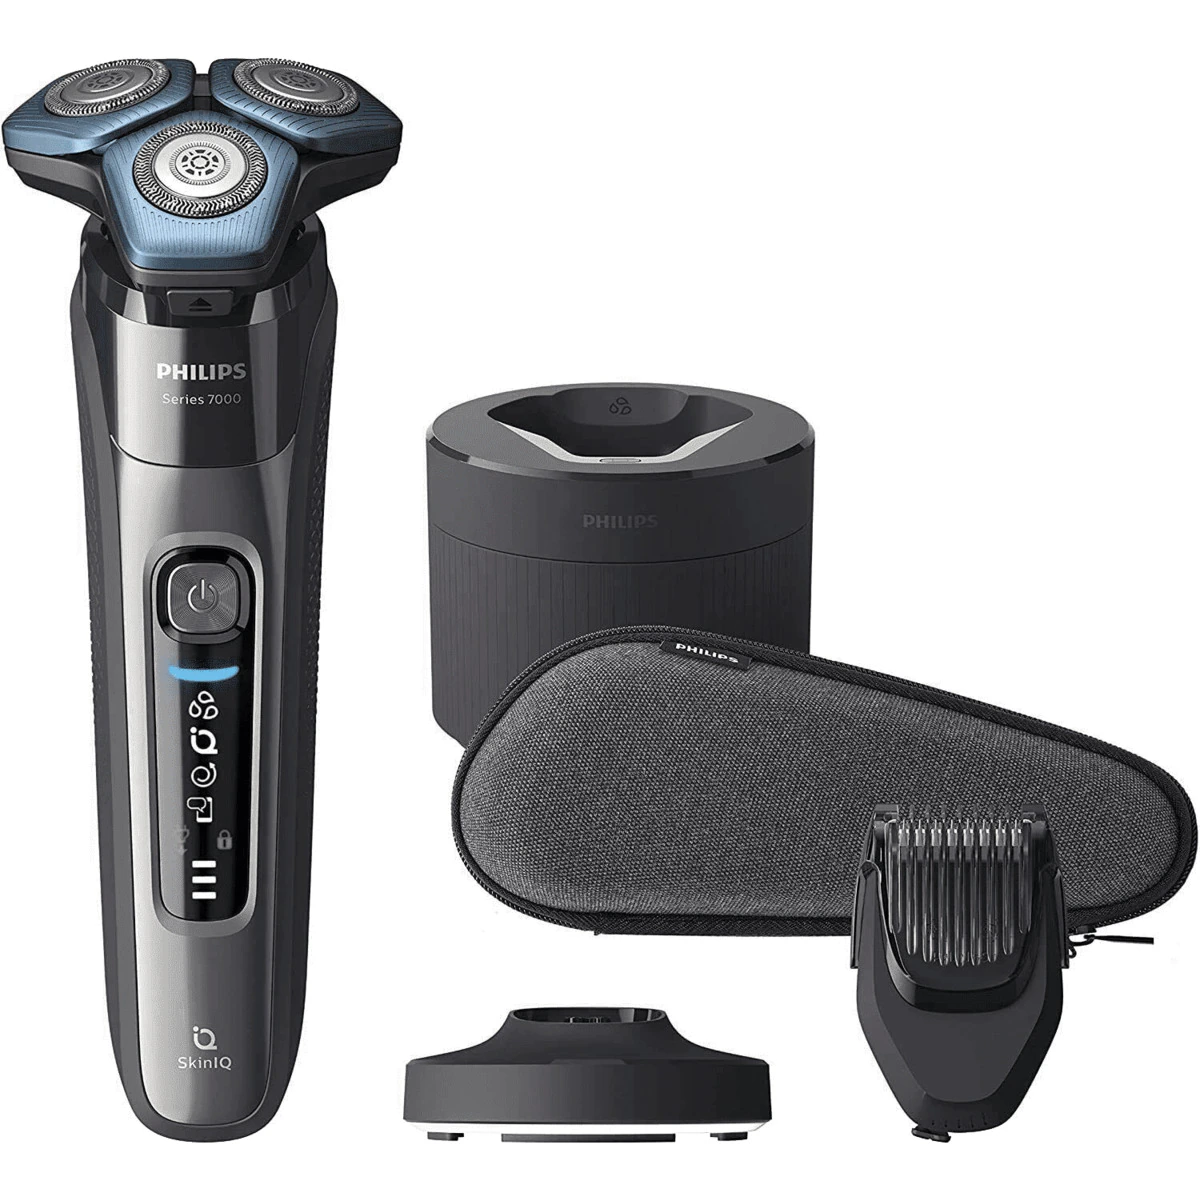 Afeitadora eléctrica Philips S7000 con tecnología SkinIQ con sensor de barba y movimiento, especial para pieles sensibles.